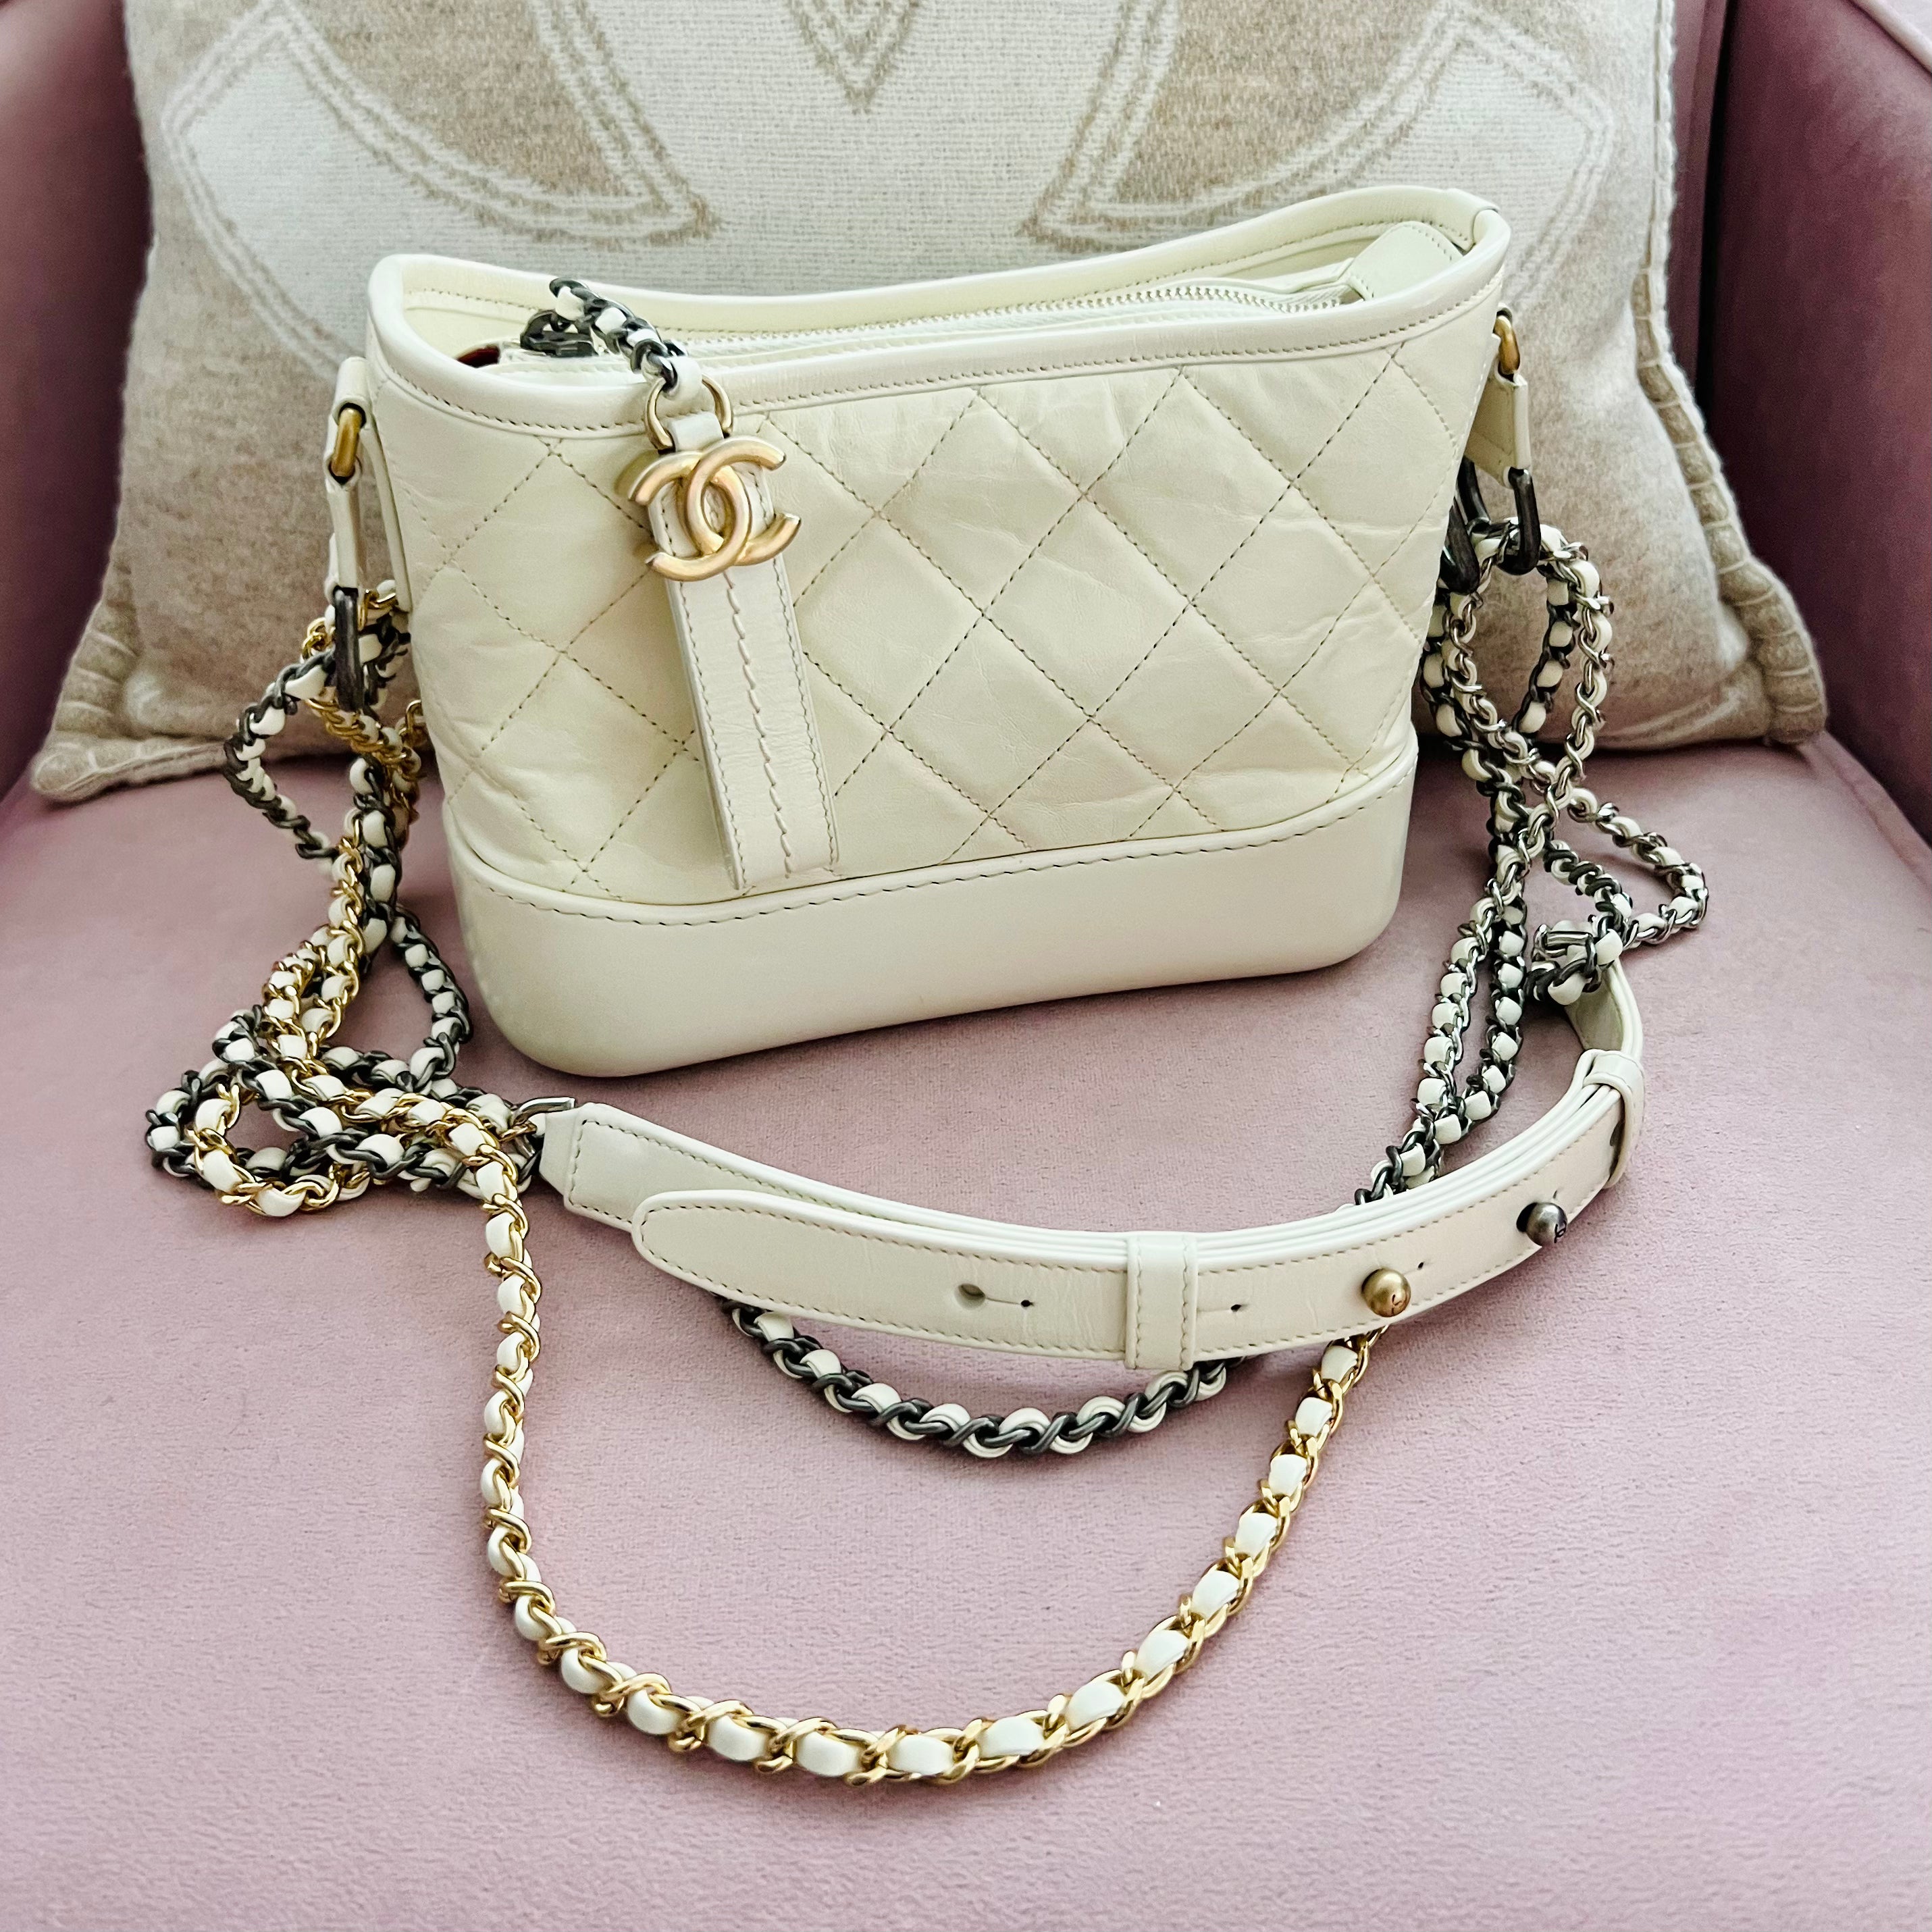 Chanel Gabrielle bag – Beccas Bags